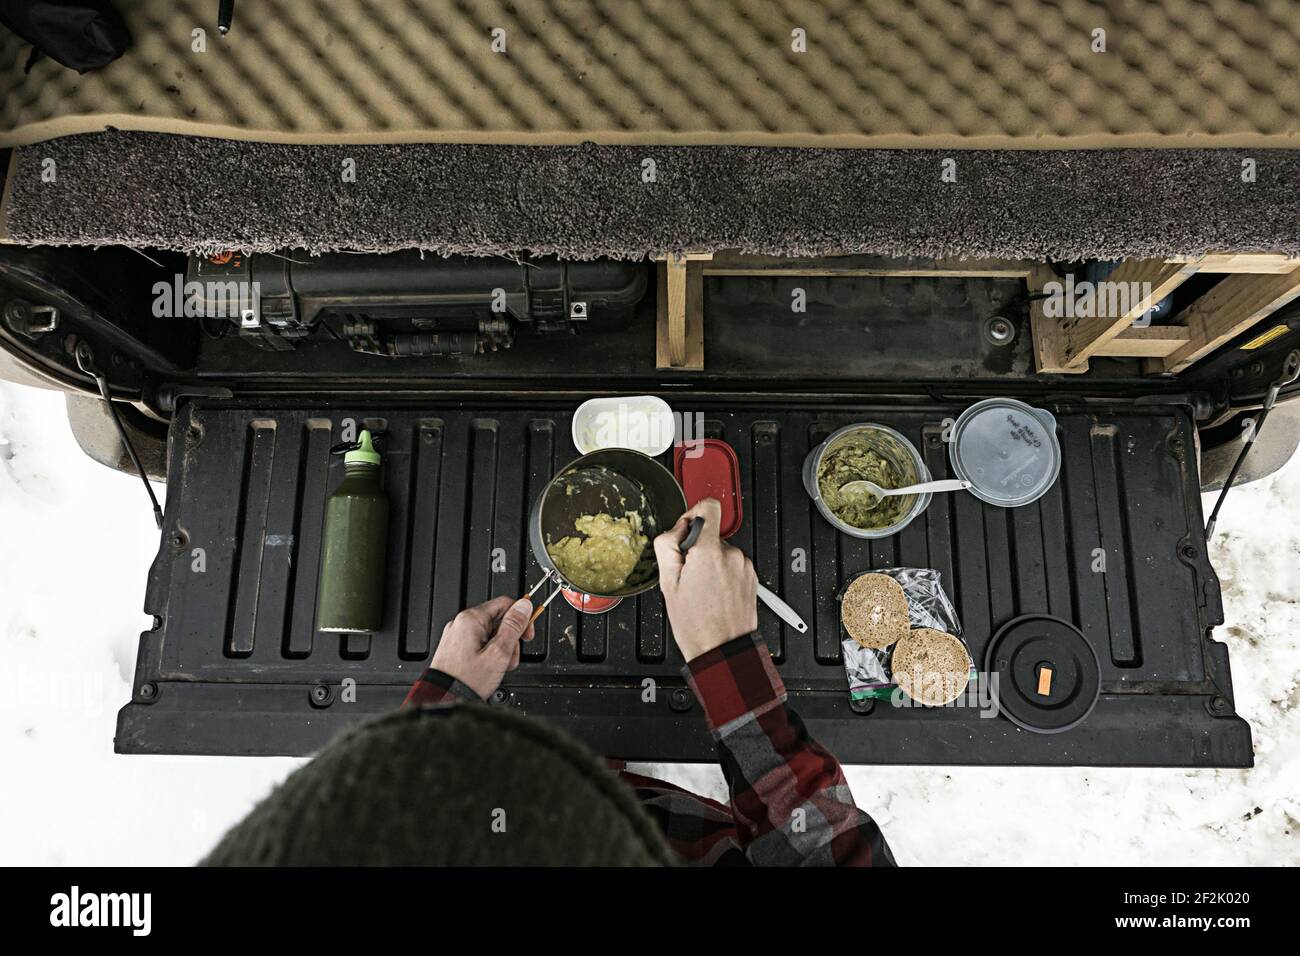 Petit déjeuner de cuisine sur le hayon du camion en hiver Banque D'Images